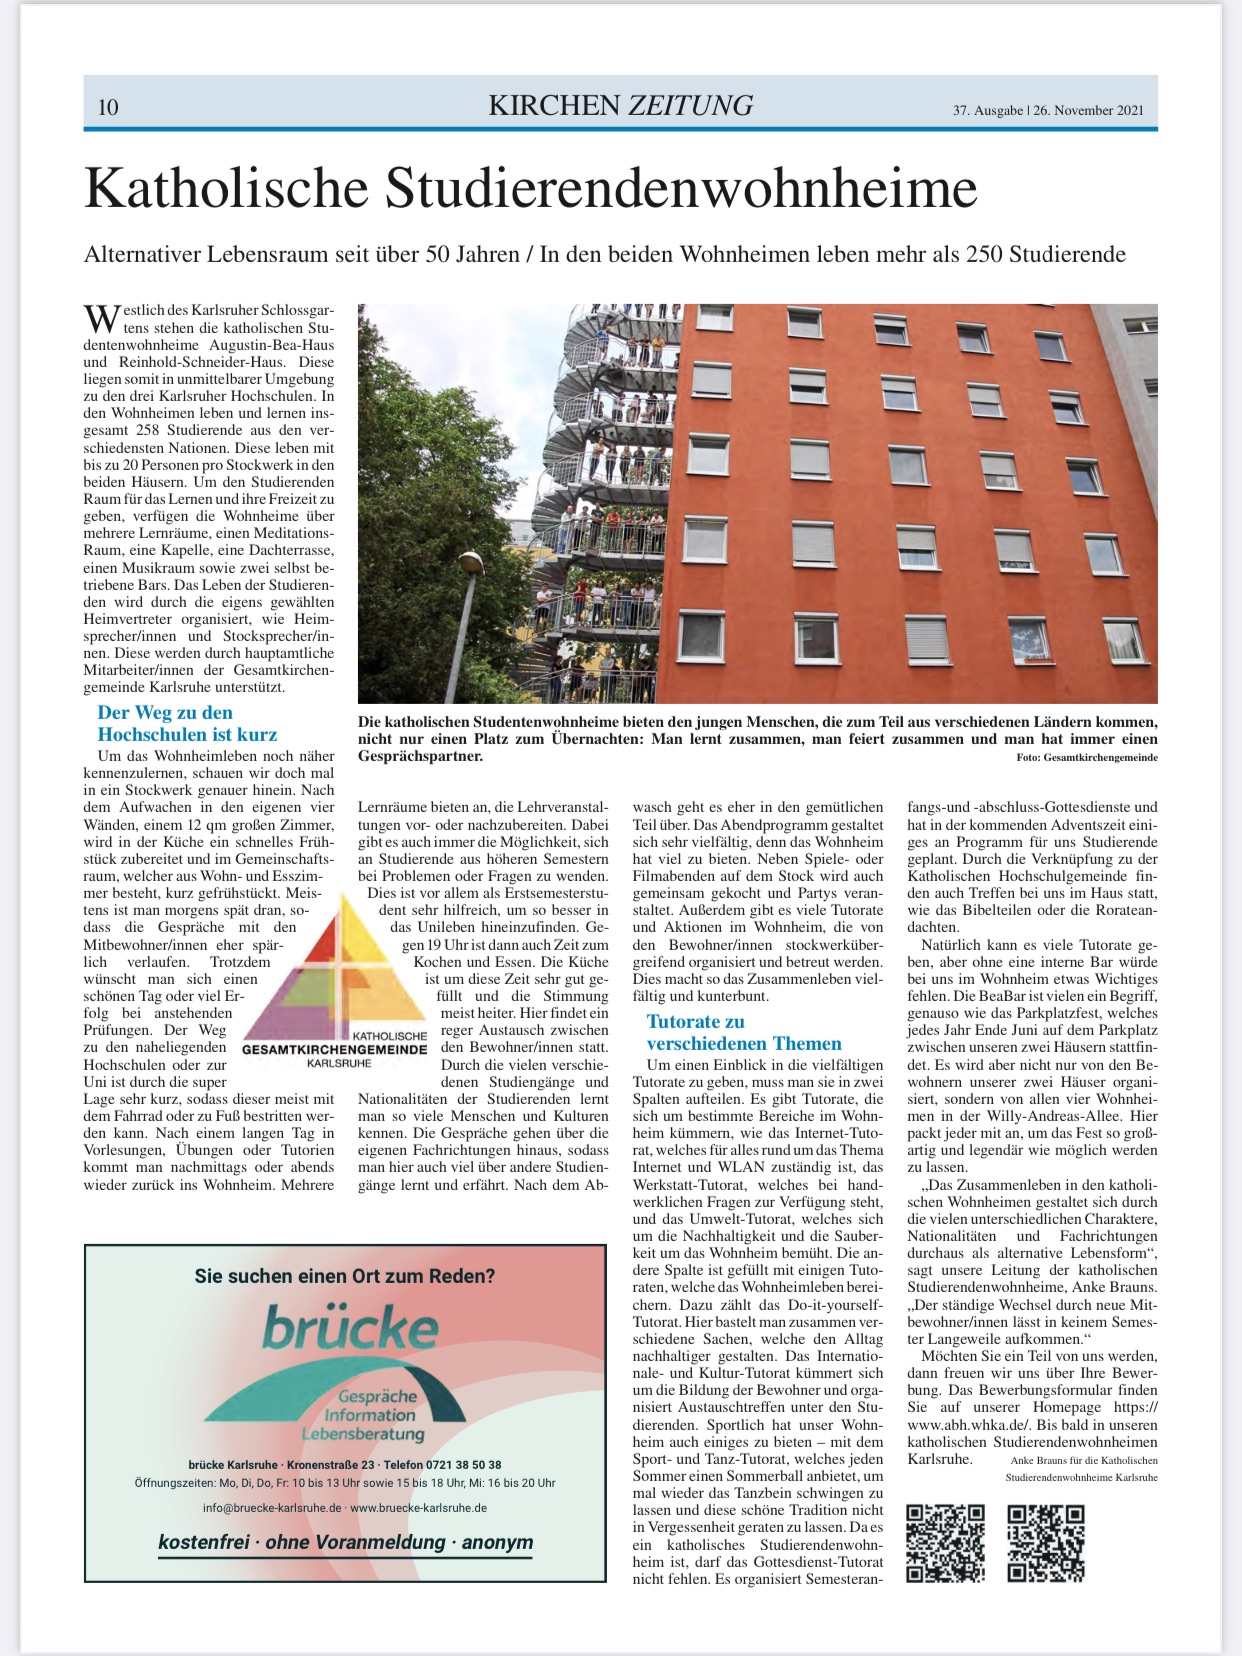 Read more about the article Katholische Studierendenwohnheime ABH + RSH  in der Kirchenzeitung.